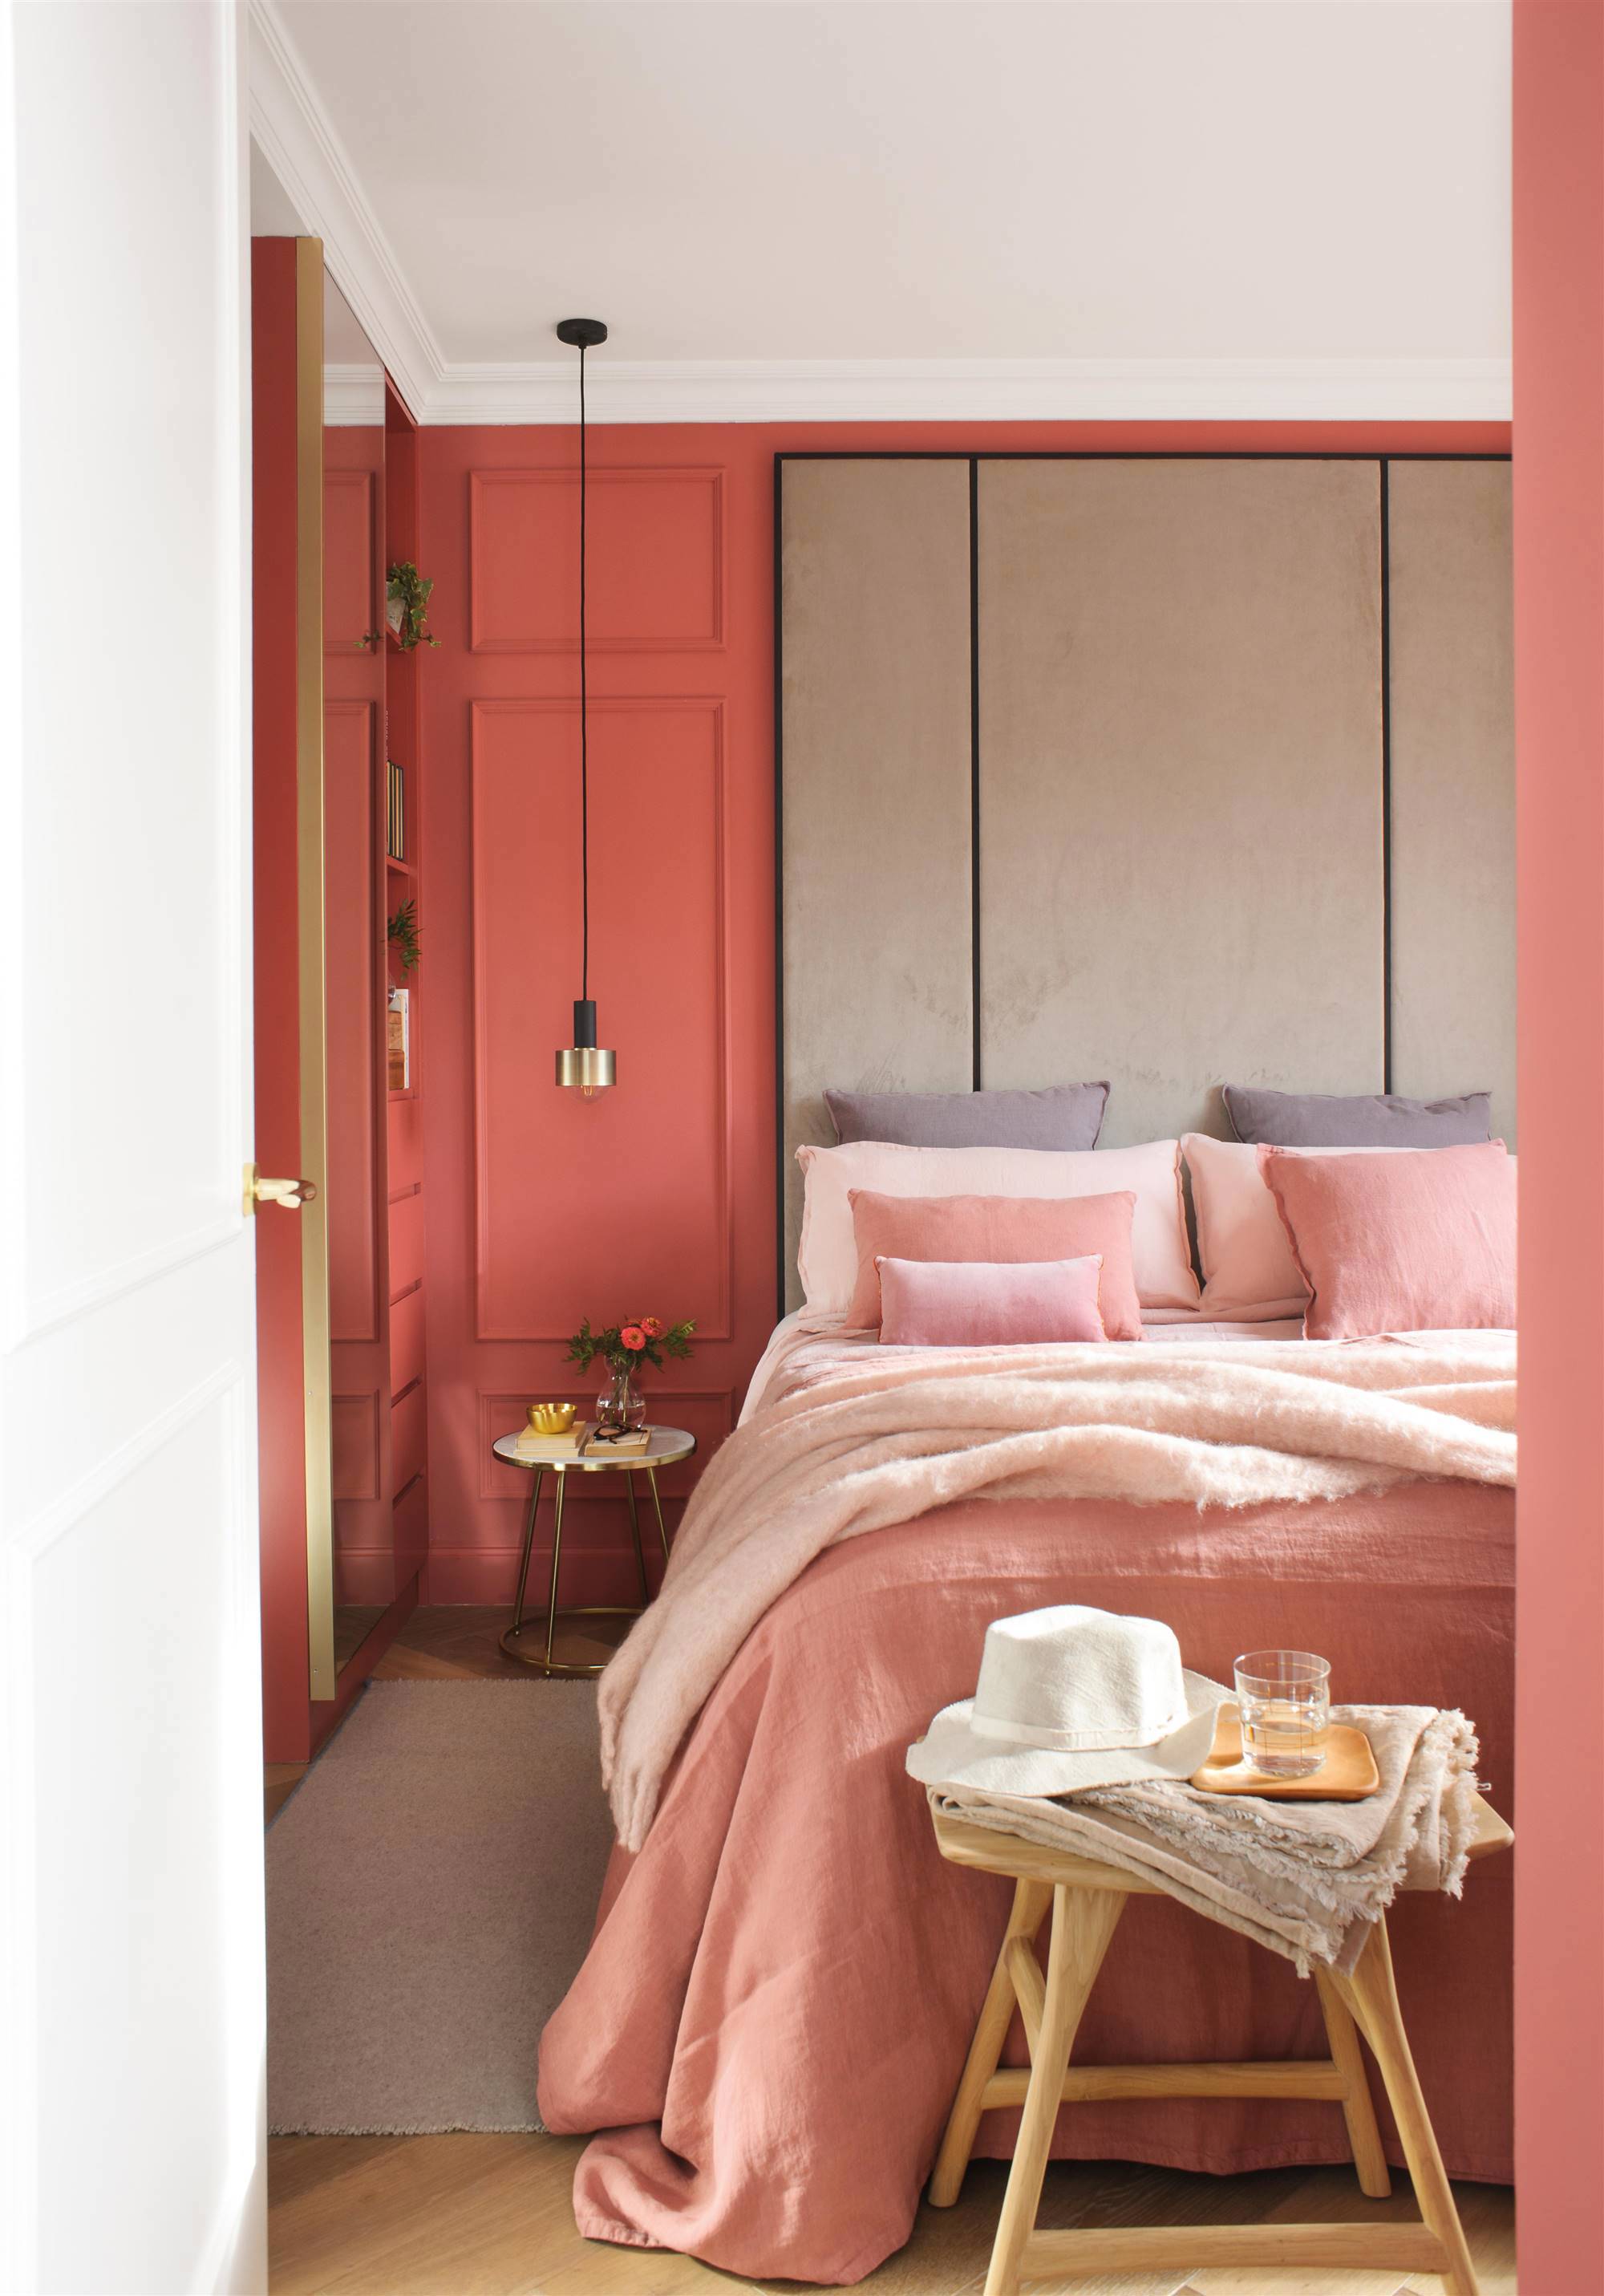 Dormitorio con pared en color arena rojiza y molduras decorativas.